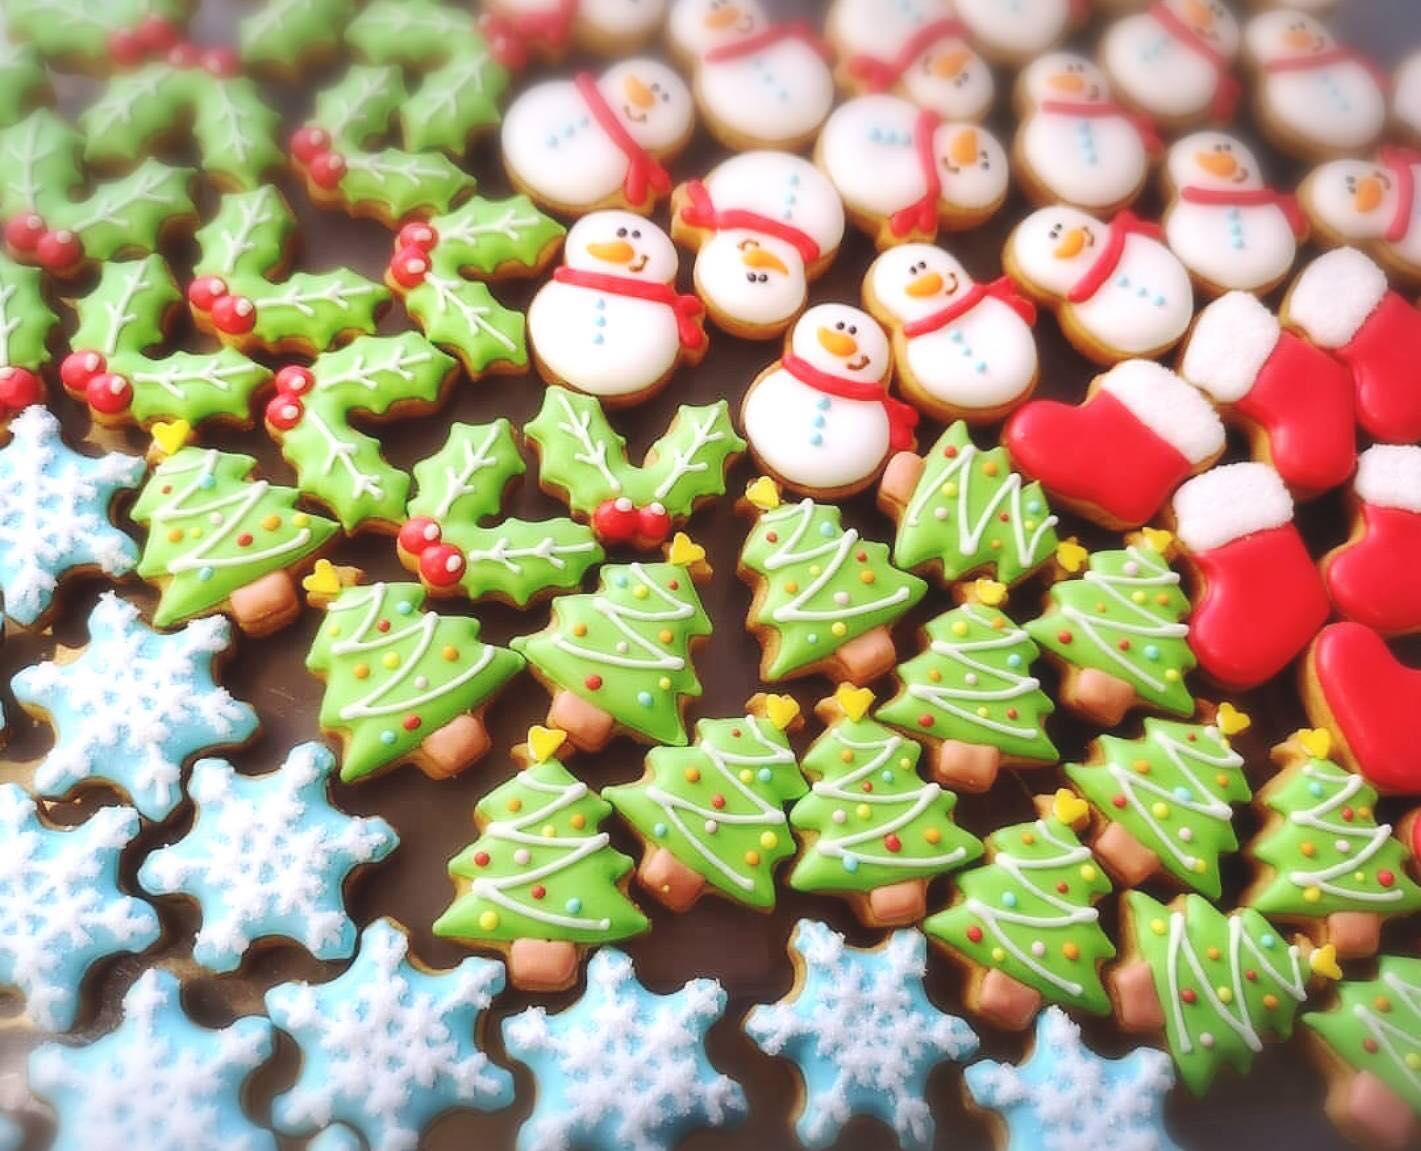 11月30日 土 開催 クリスマスイメージの可愛いクッキーをgetしよう 最新情報 子連れママのための子育て情報サイト Mamasky ママスキー